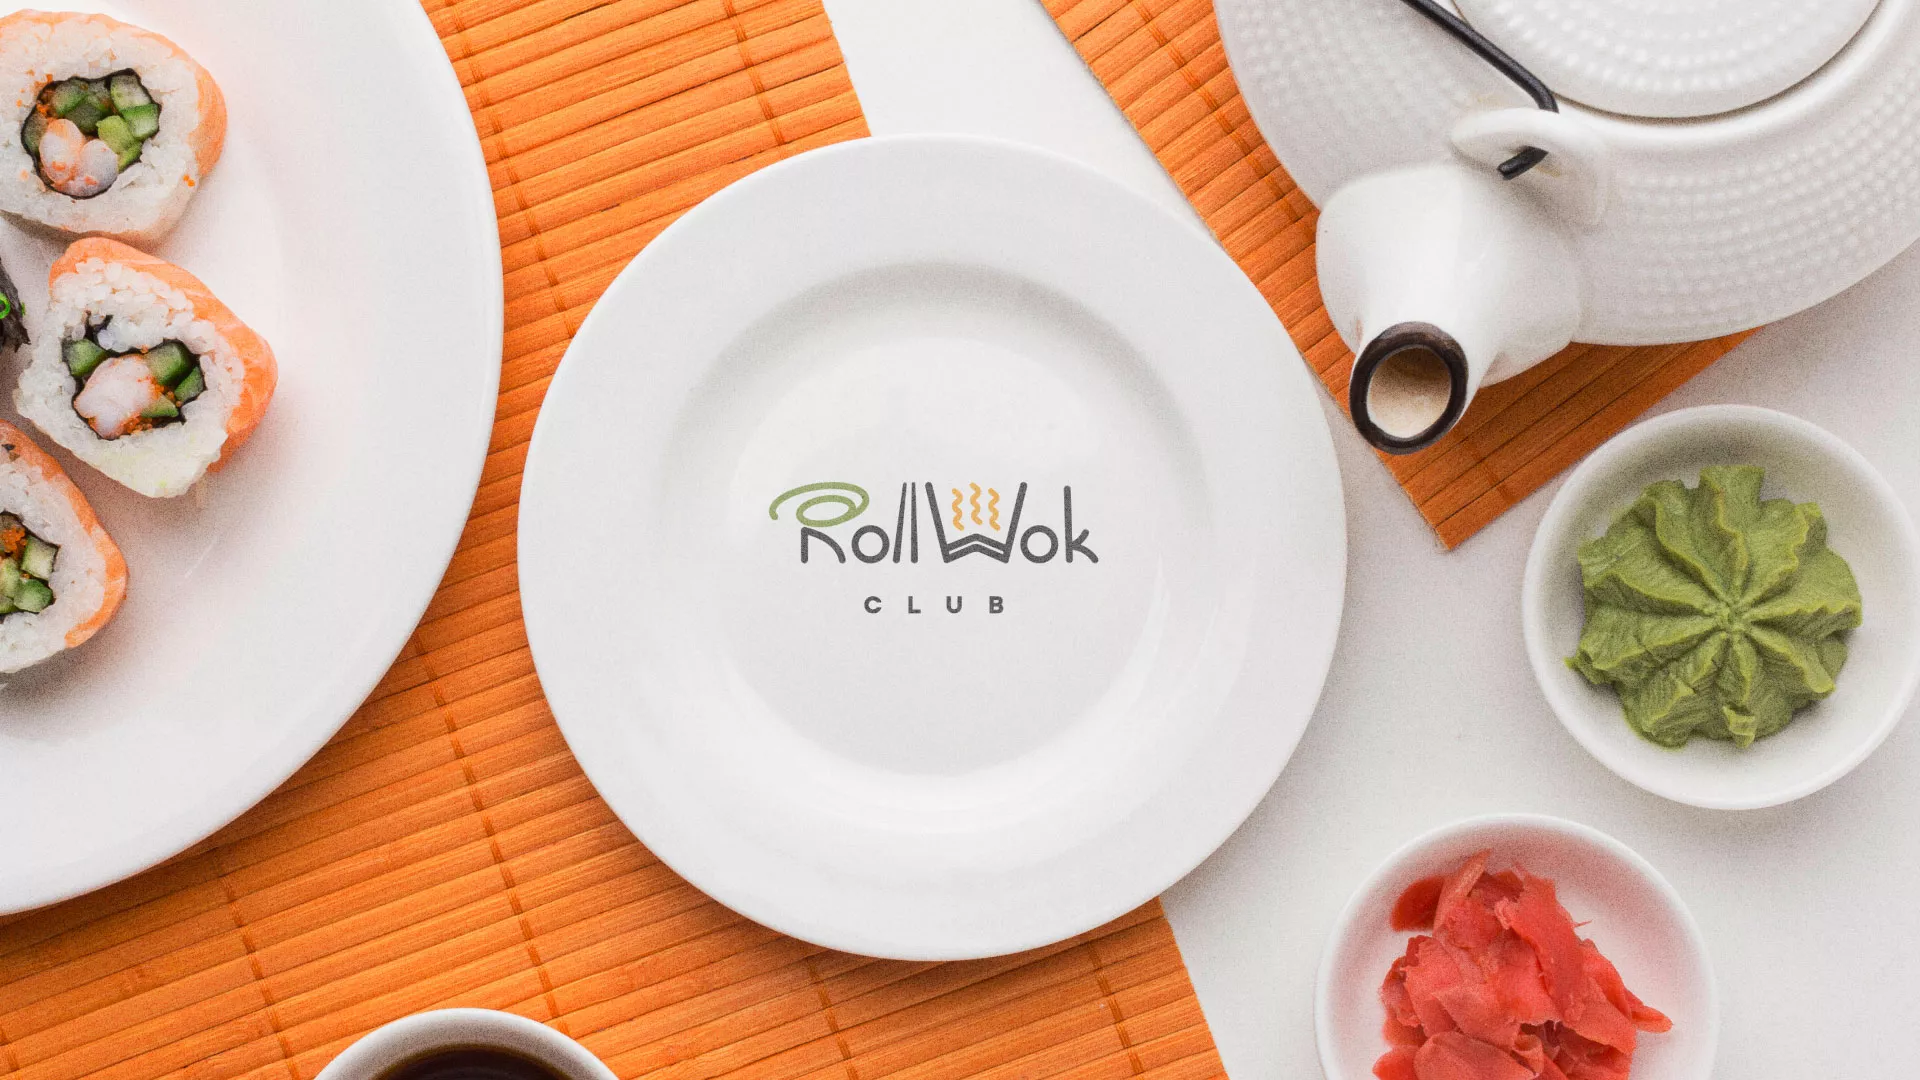 Разработка логотипа и фирменного стиля суши-бара «Roll Wok Club» в Пскове